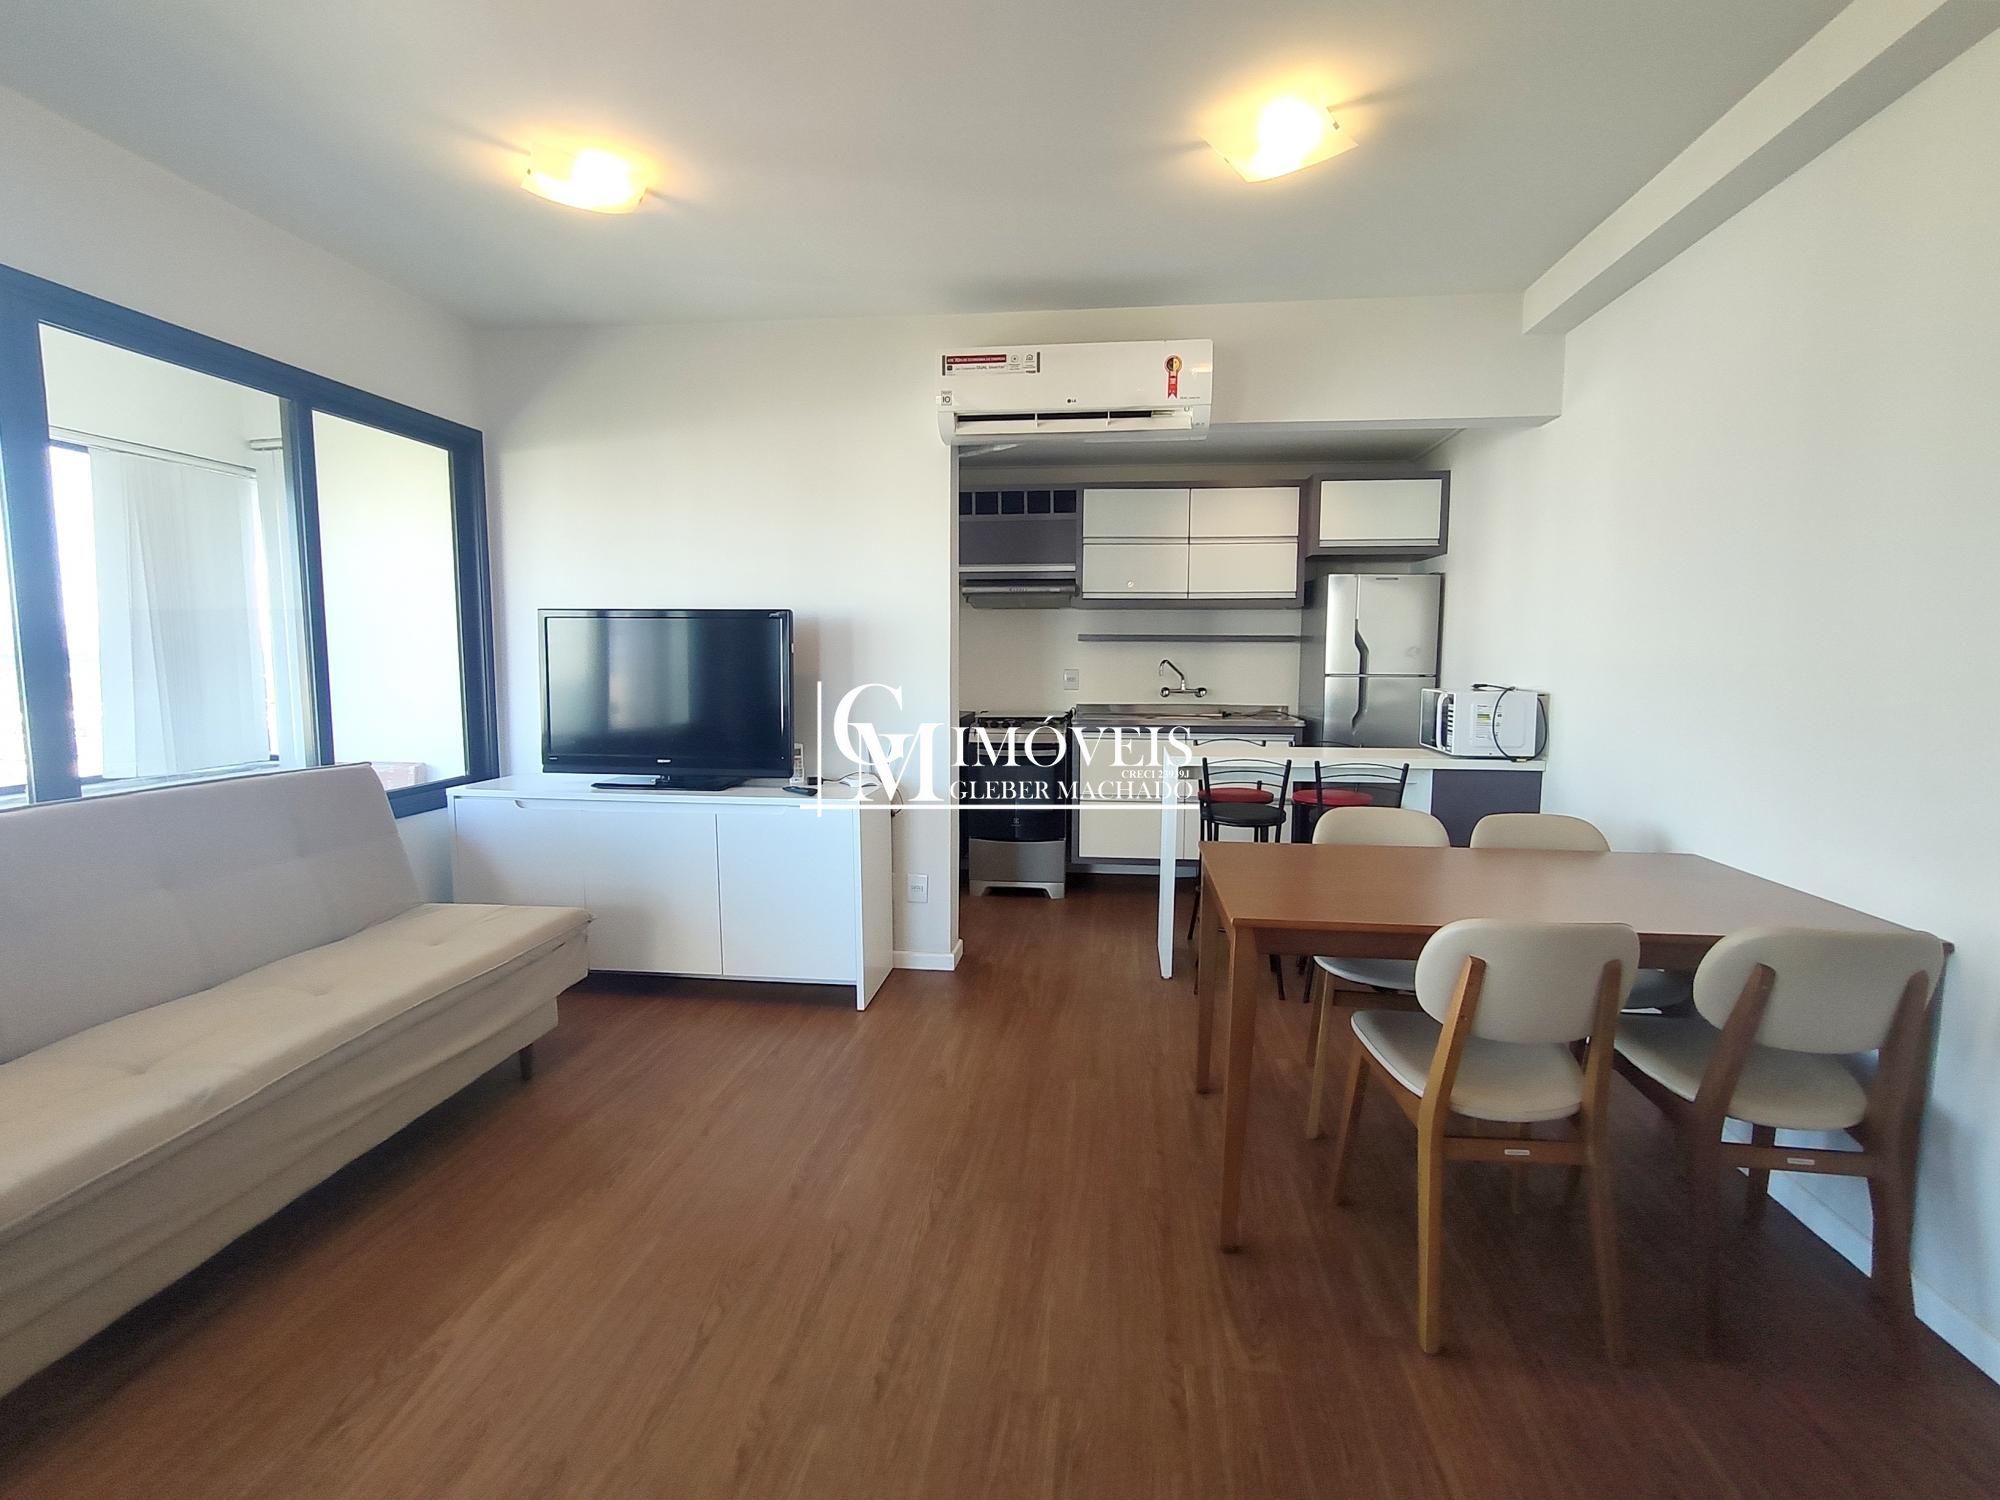 Apartamento 1 dormitório mobiliado Torres RS